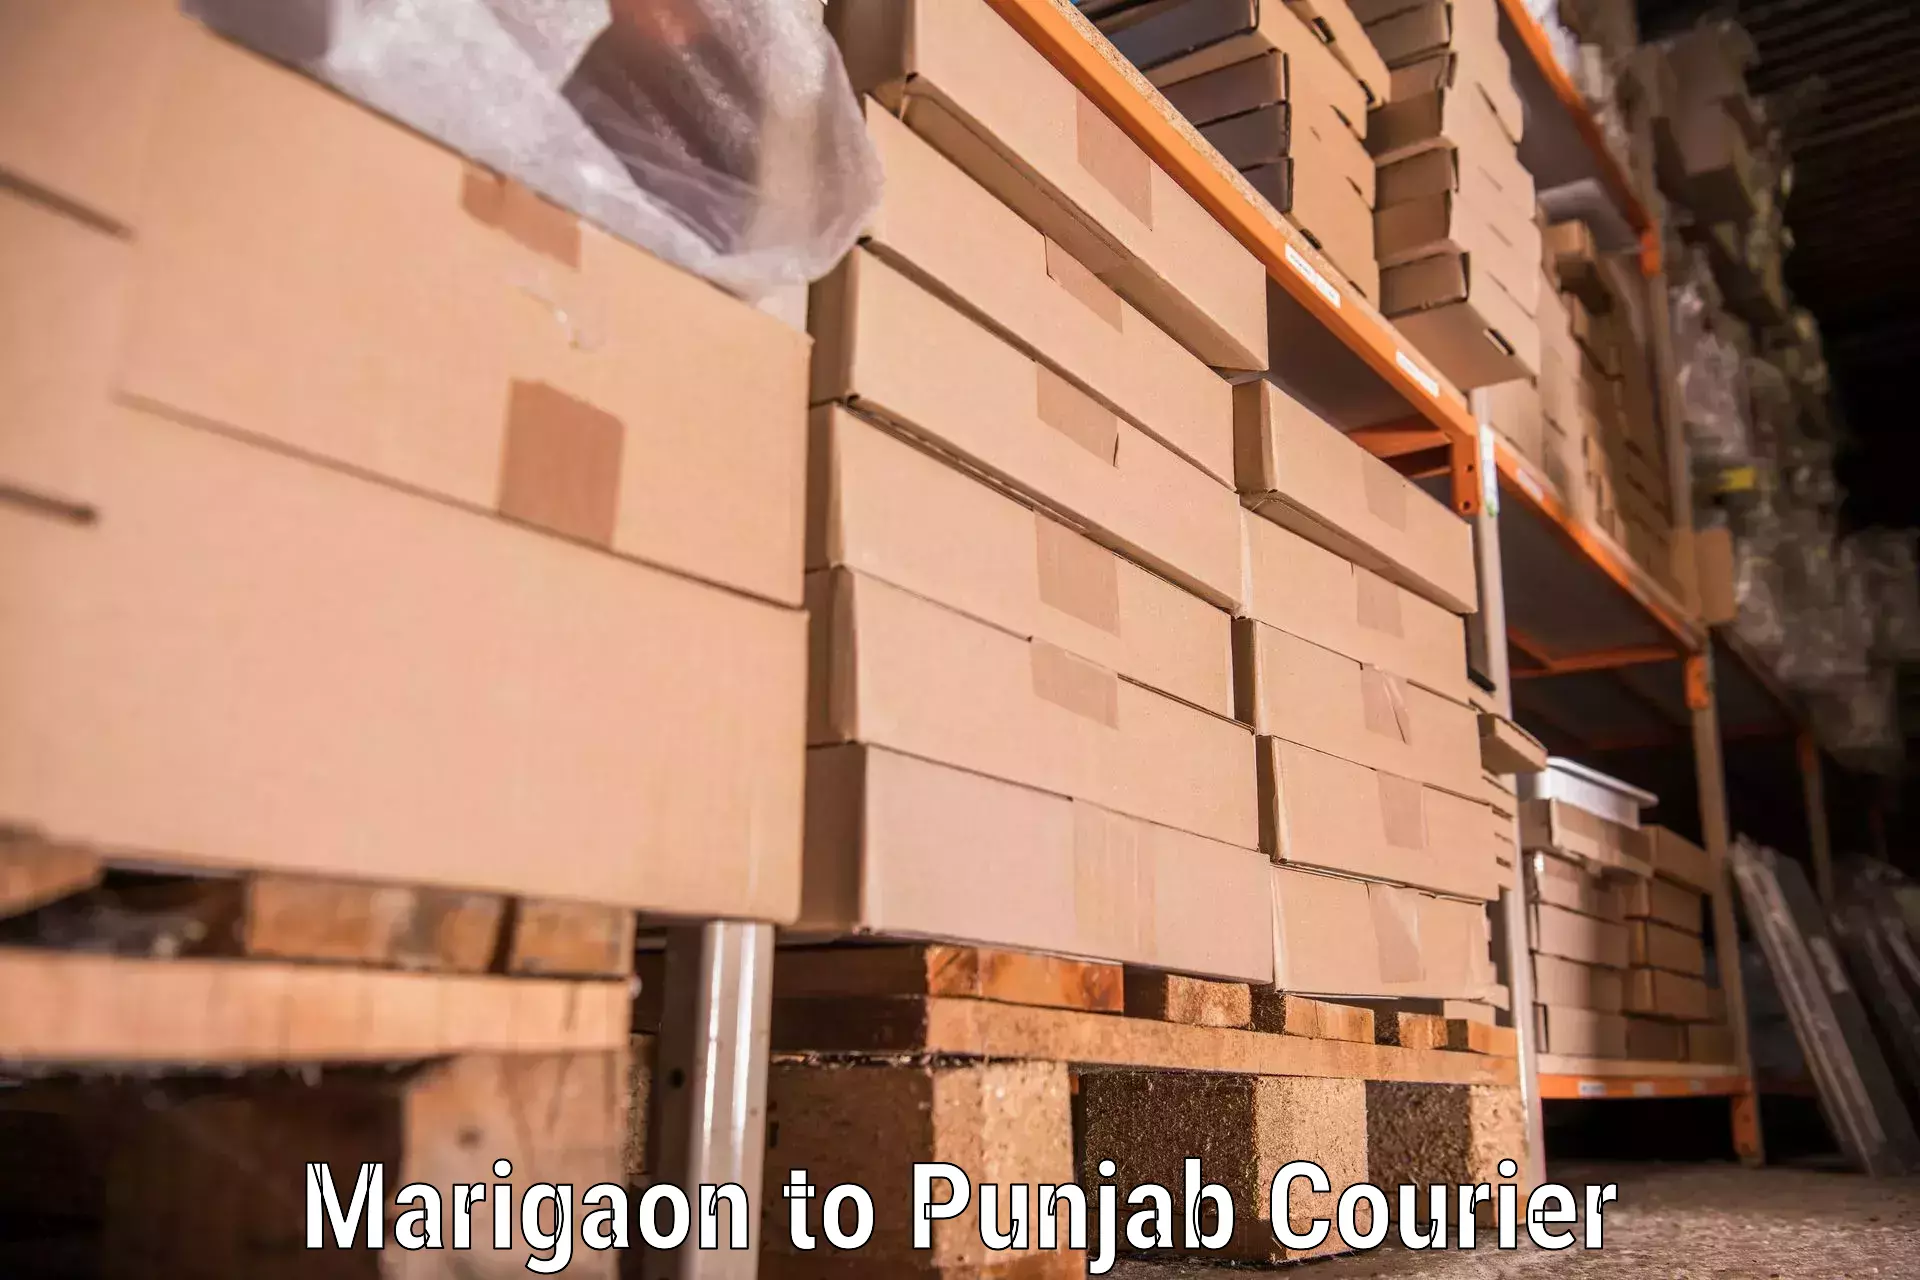 Furniture transport service Marigaon to Punjab